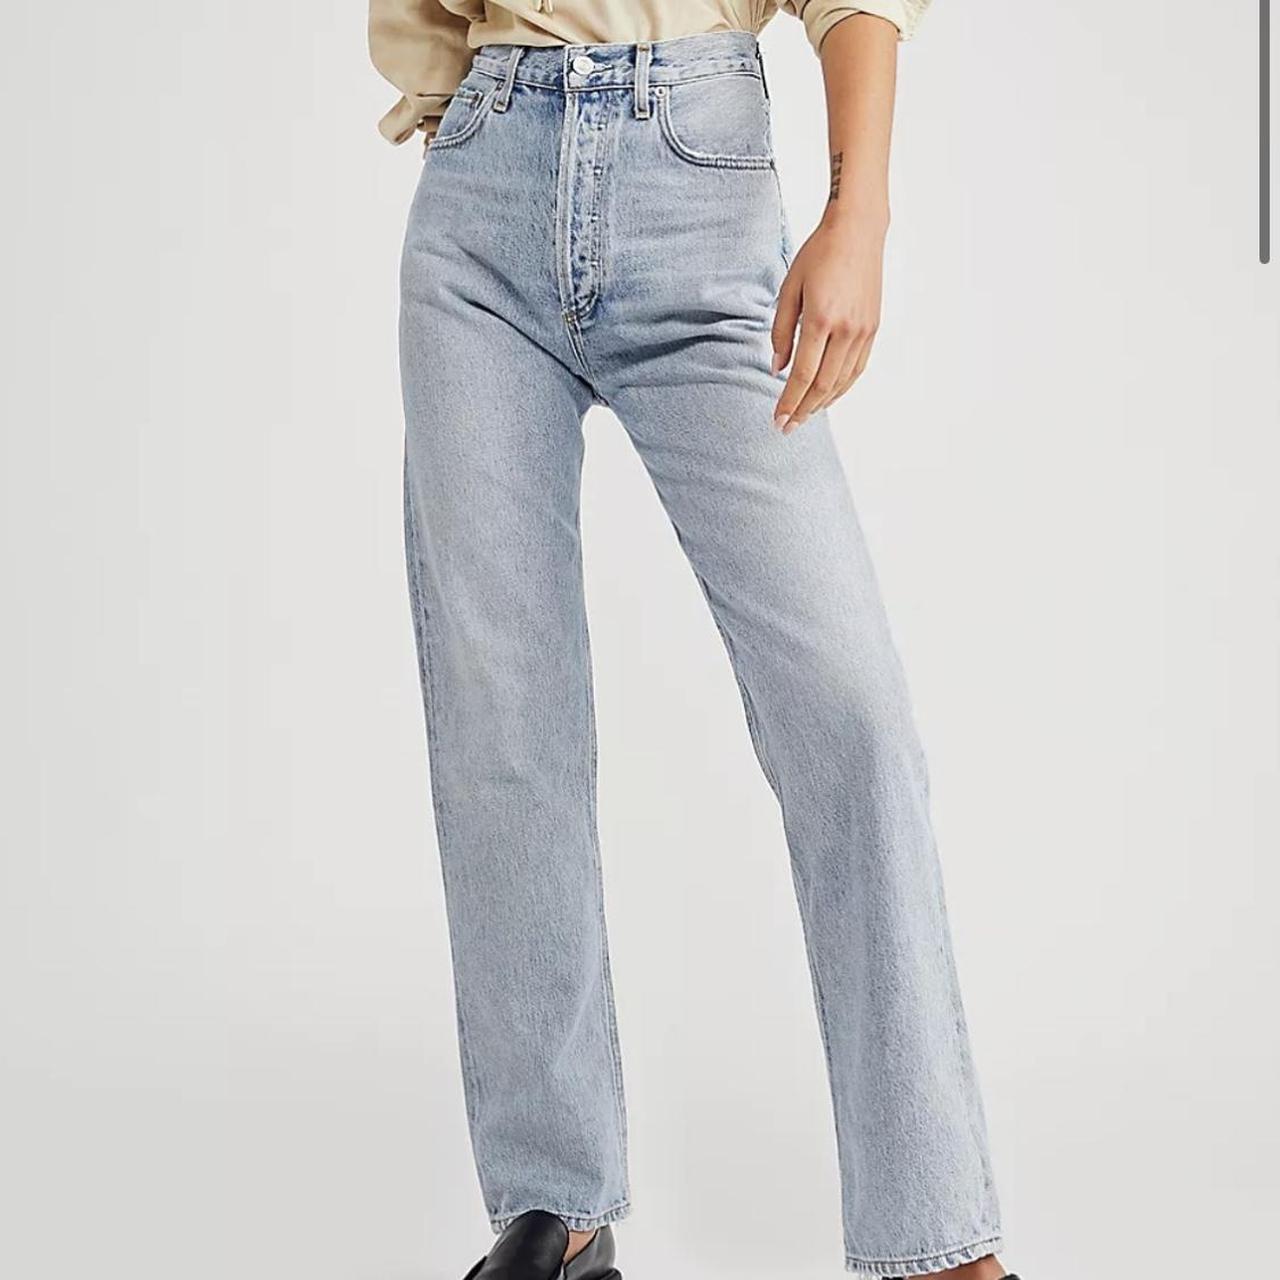 AGOLDE Women's Jeans